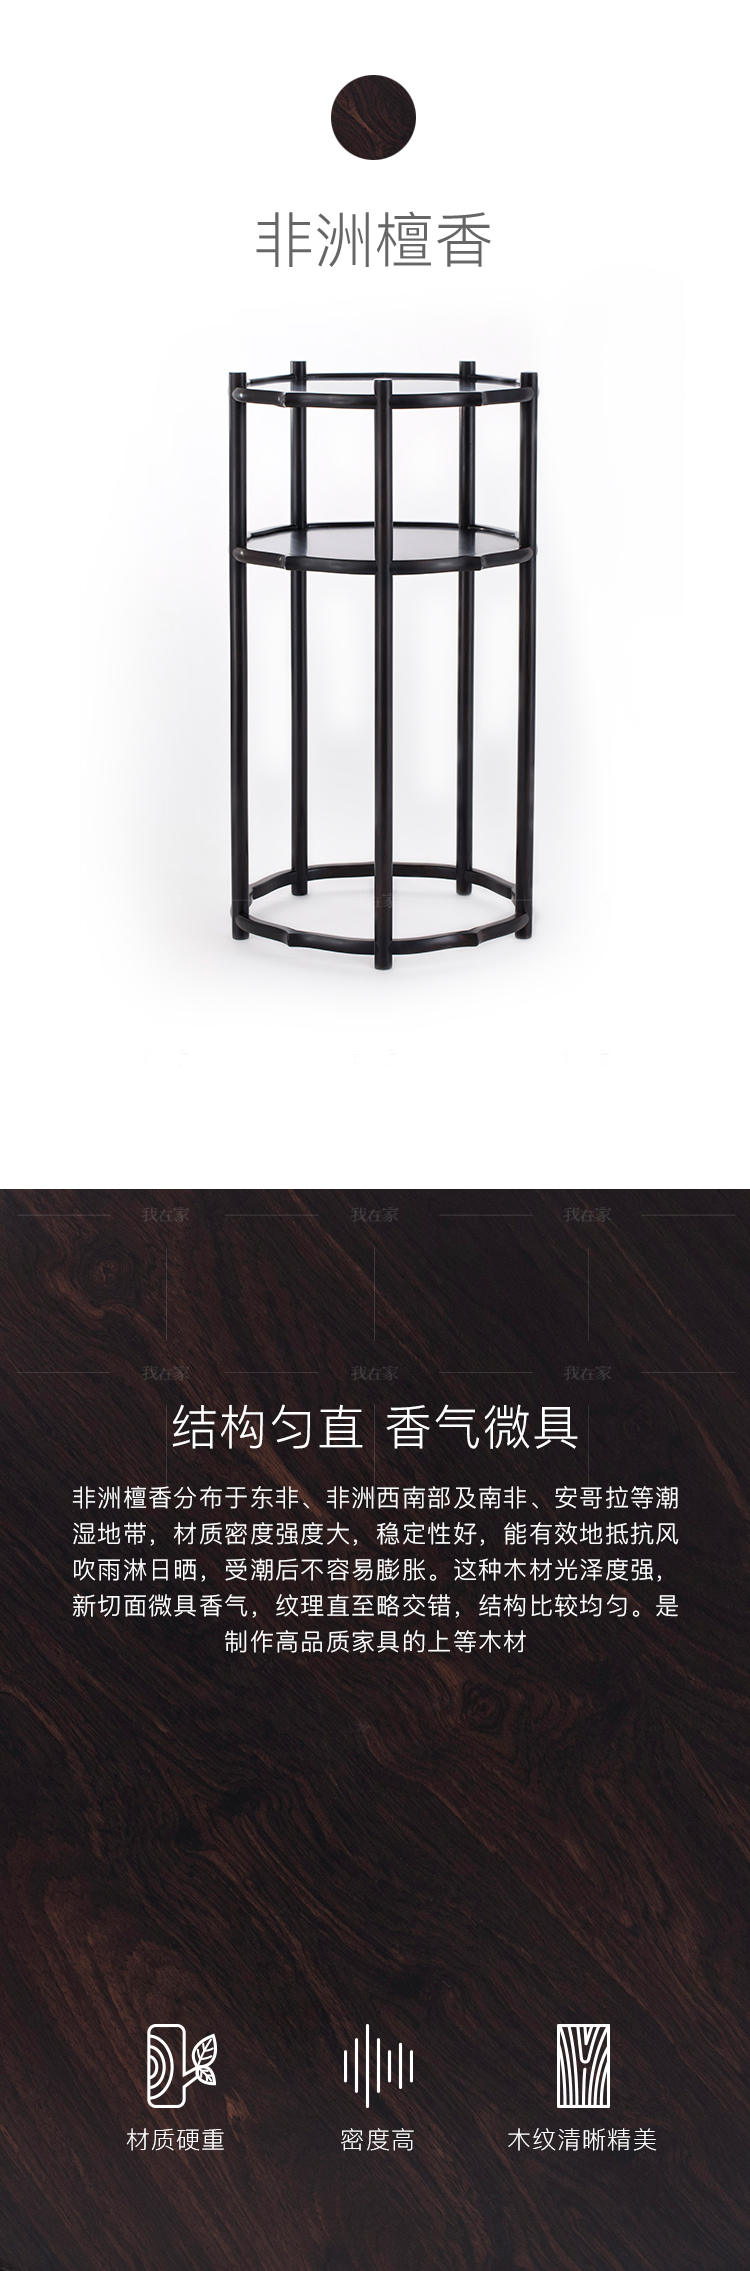 新中式风格海棠香几的家具详细介绍